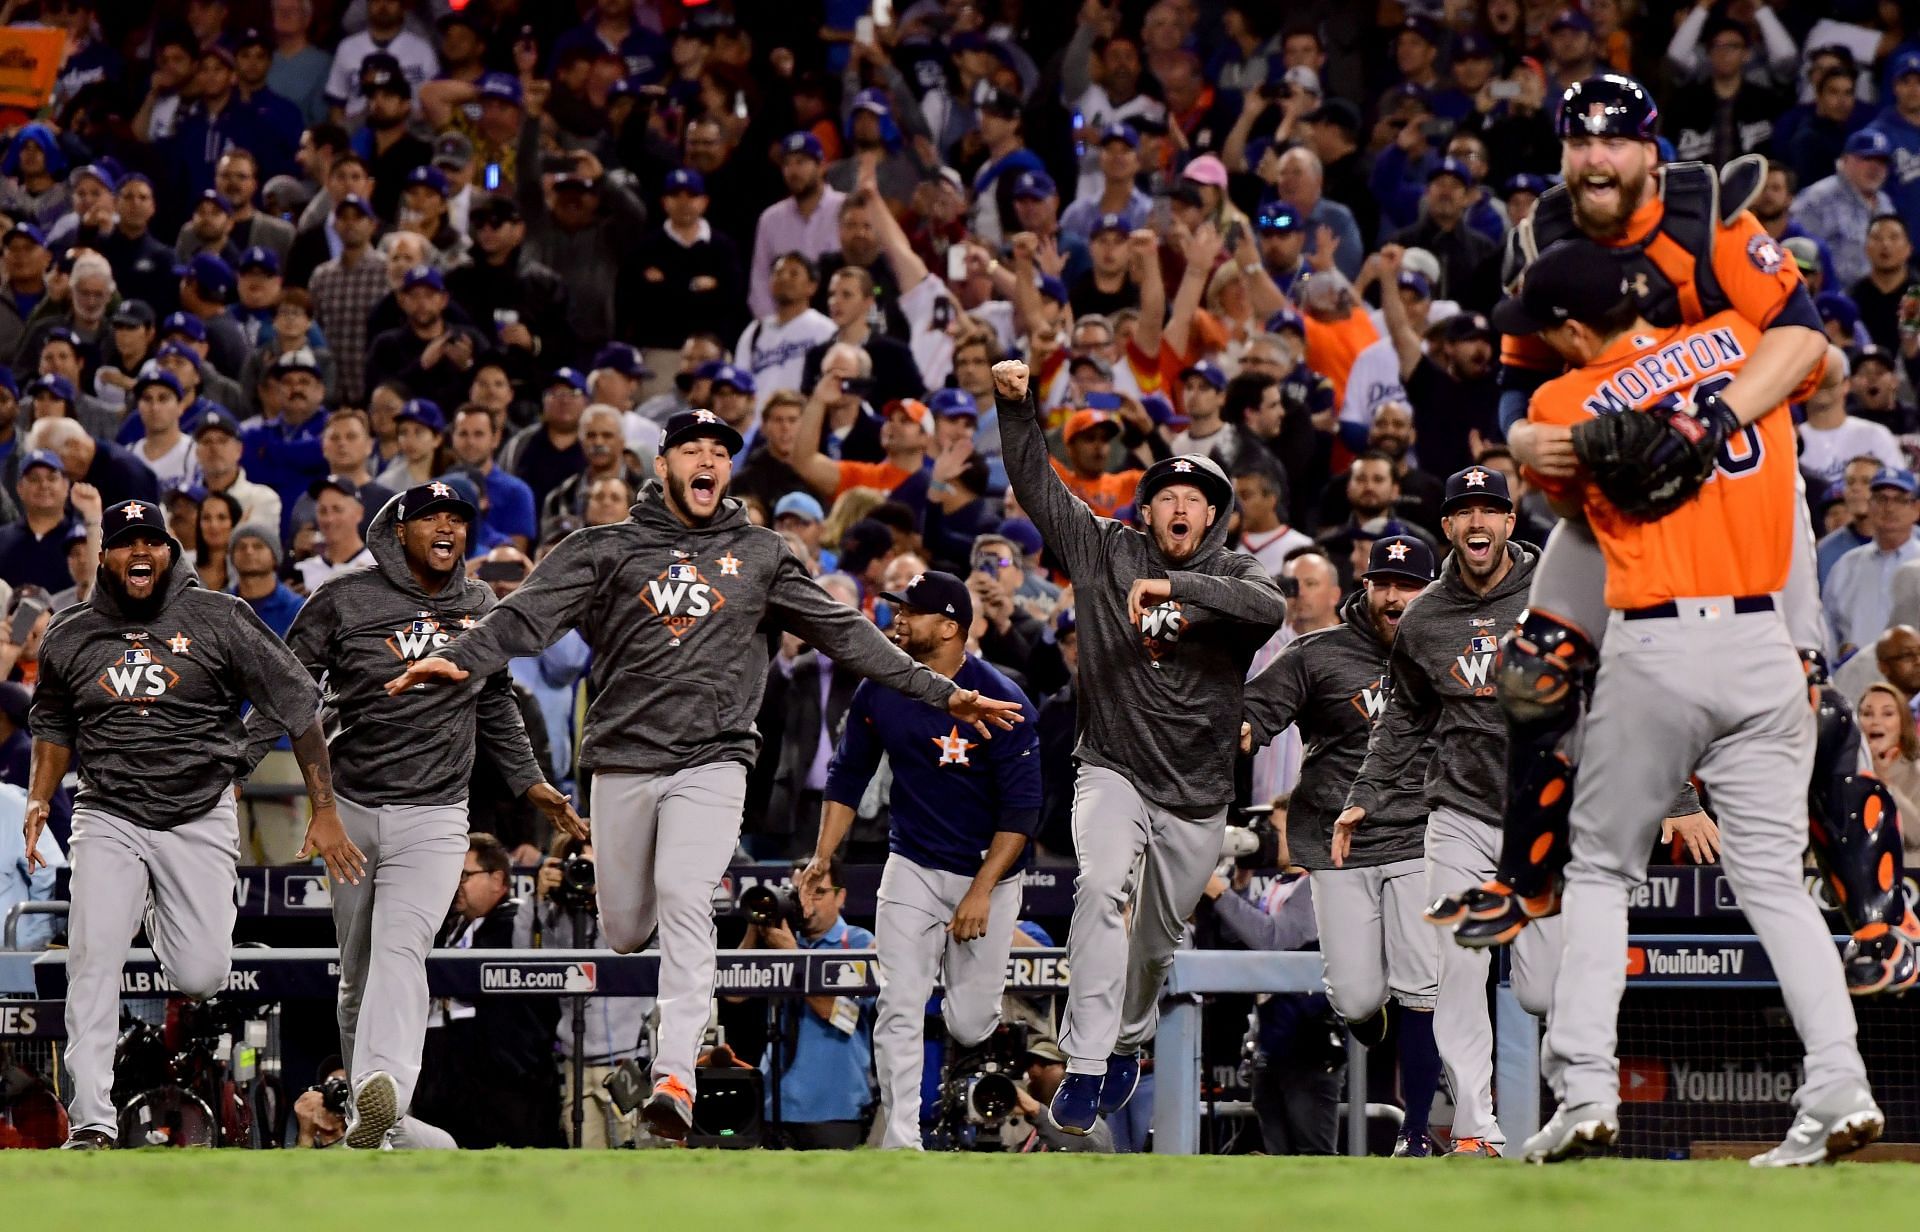 The Houston Astros celebrate their 2017 World Series win